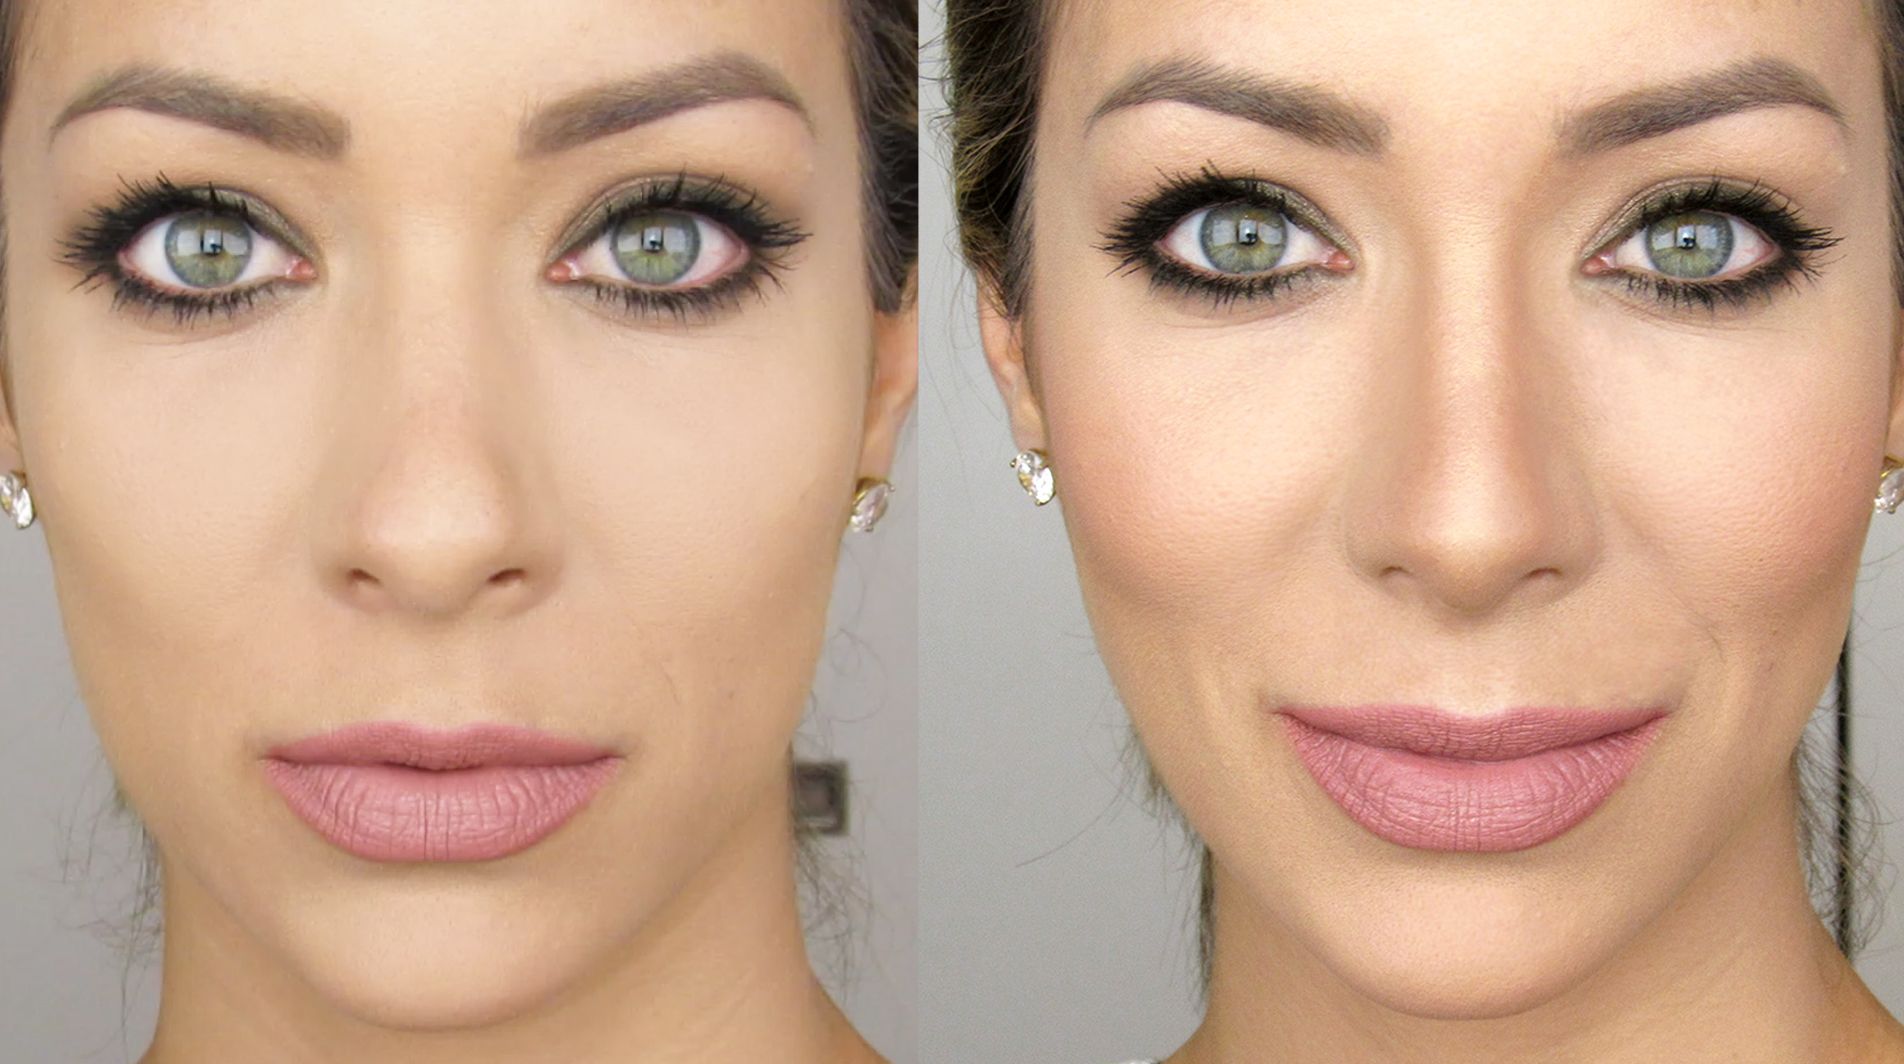 Как сделать нос меньше с помощью макияжа: контурирование, визуальное уменьшение